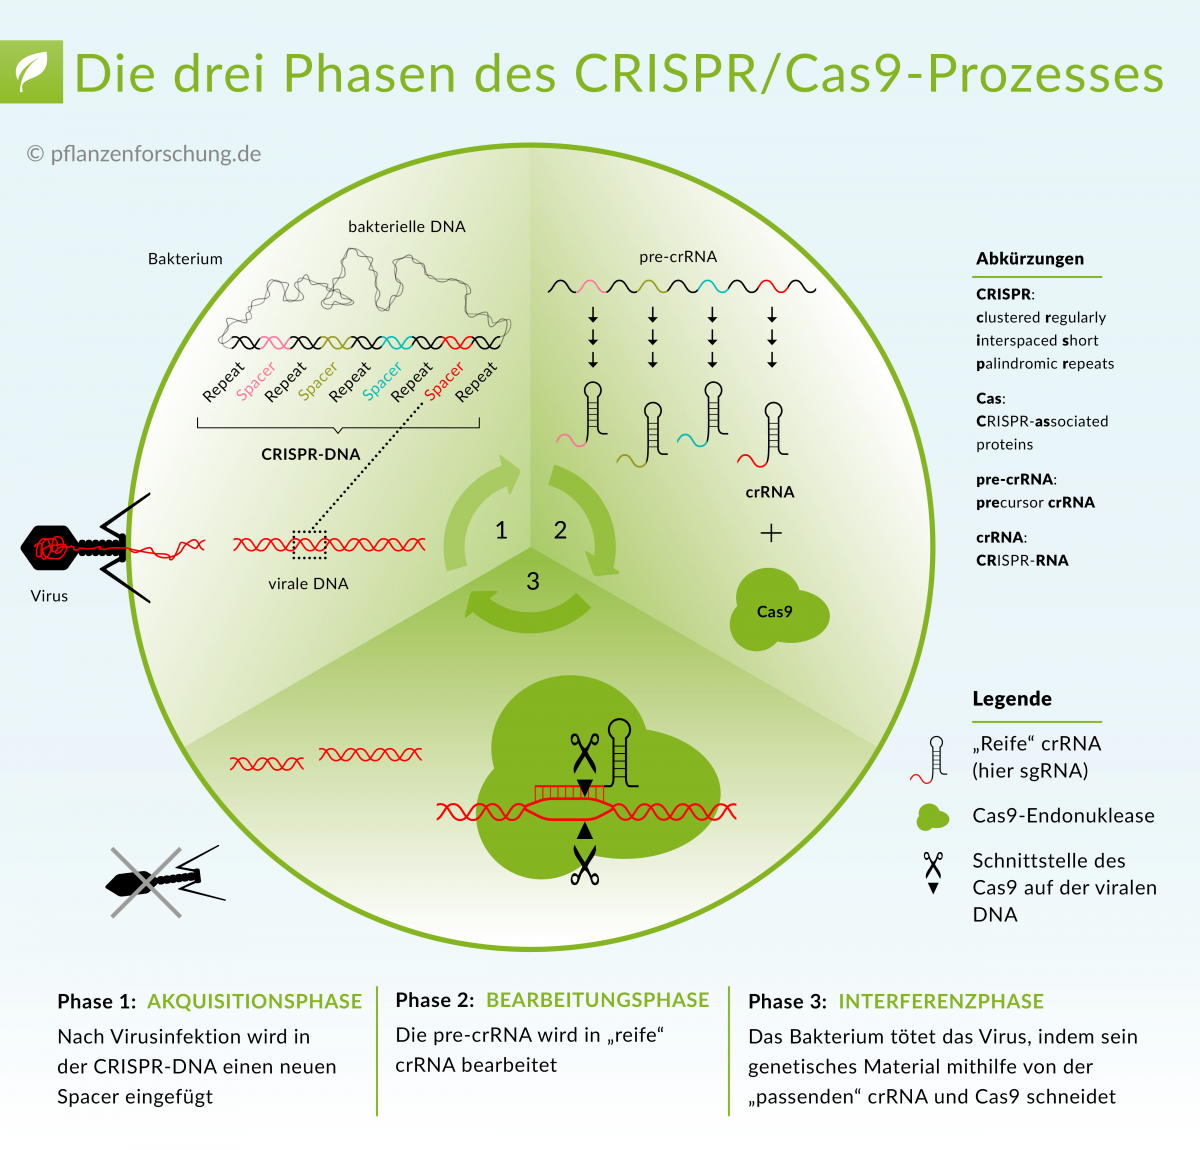 Die Funktionsweise des Typ II CRISPR/Cas-Systems. Der Ablauf des Prozesses erfolgt in drei Phasen: Akquisition eines neuen Distanzstückes, Bearbeitung der pre-crRNA in cr-RNA, Abbau der viralen DNA.
